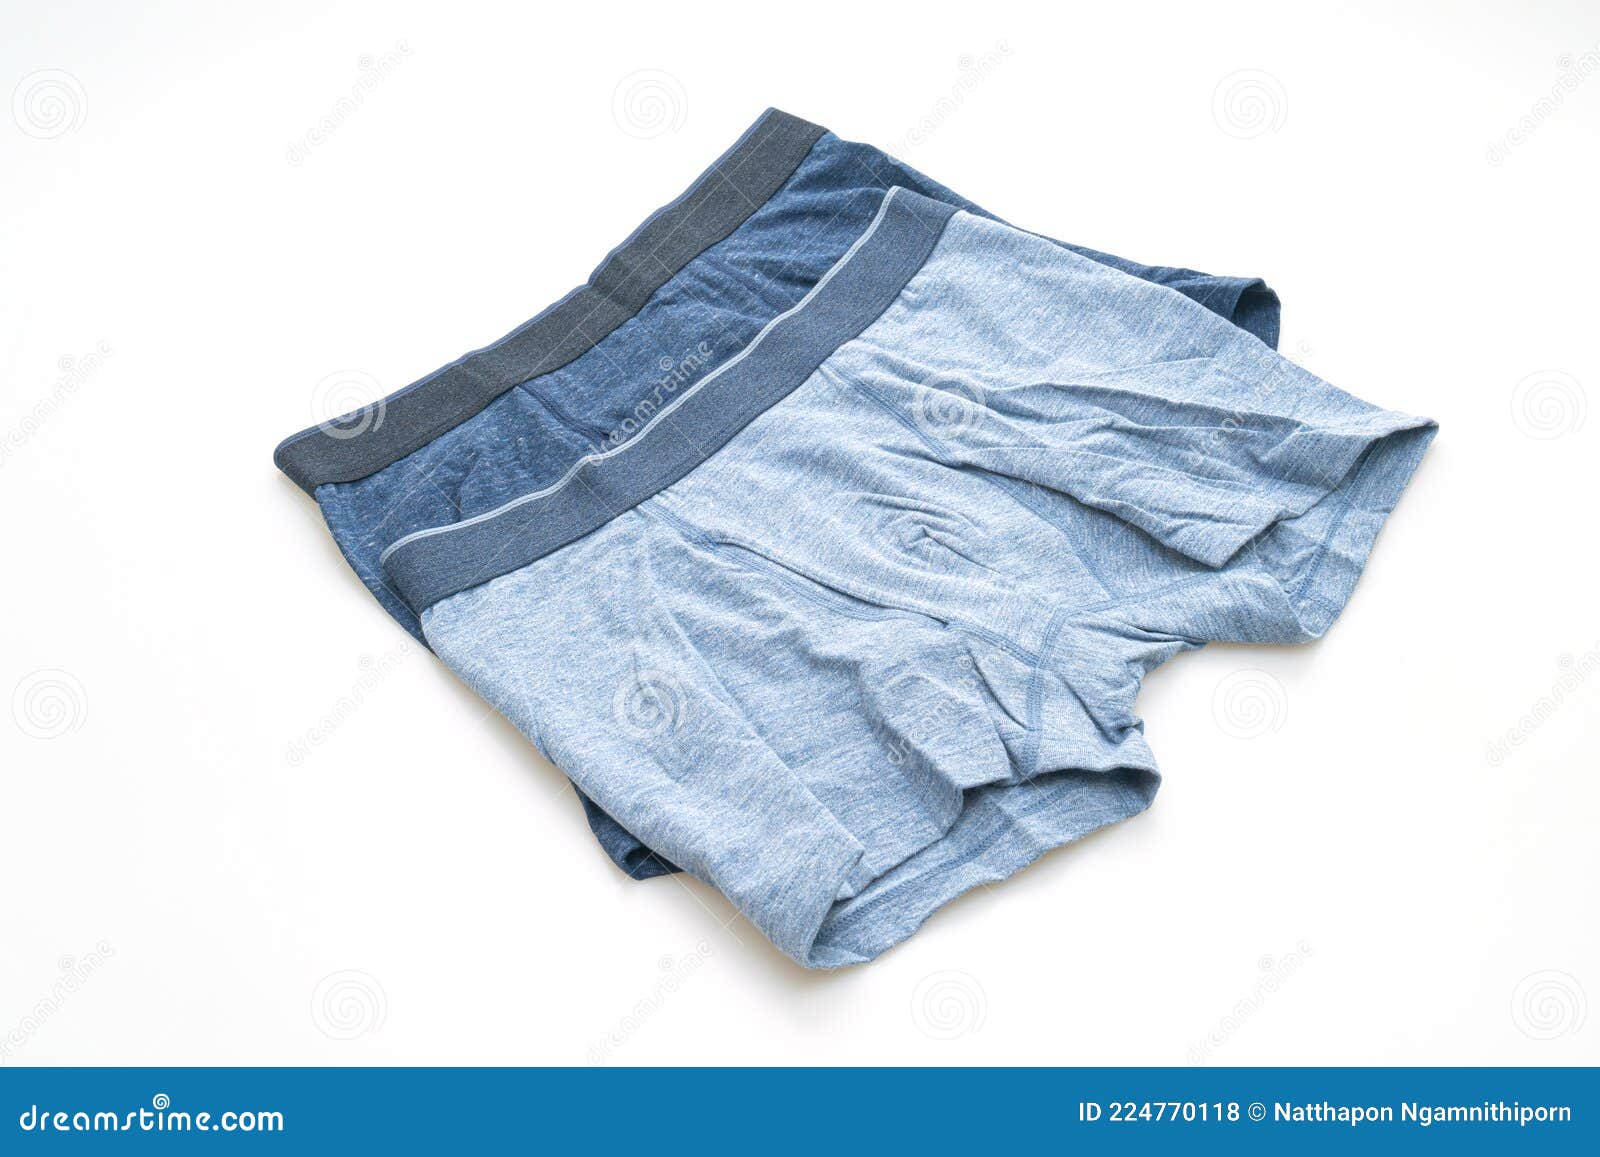 Blue Men Underwear on White Background Stock Photo - Image of isolated ...